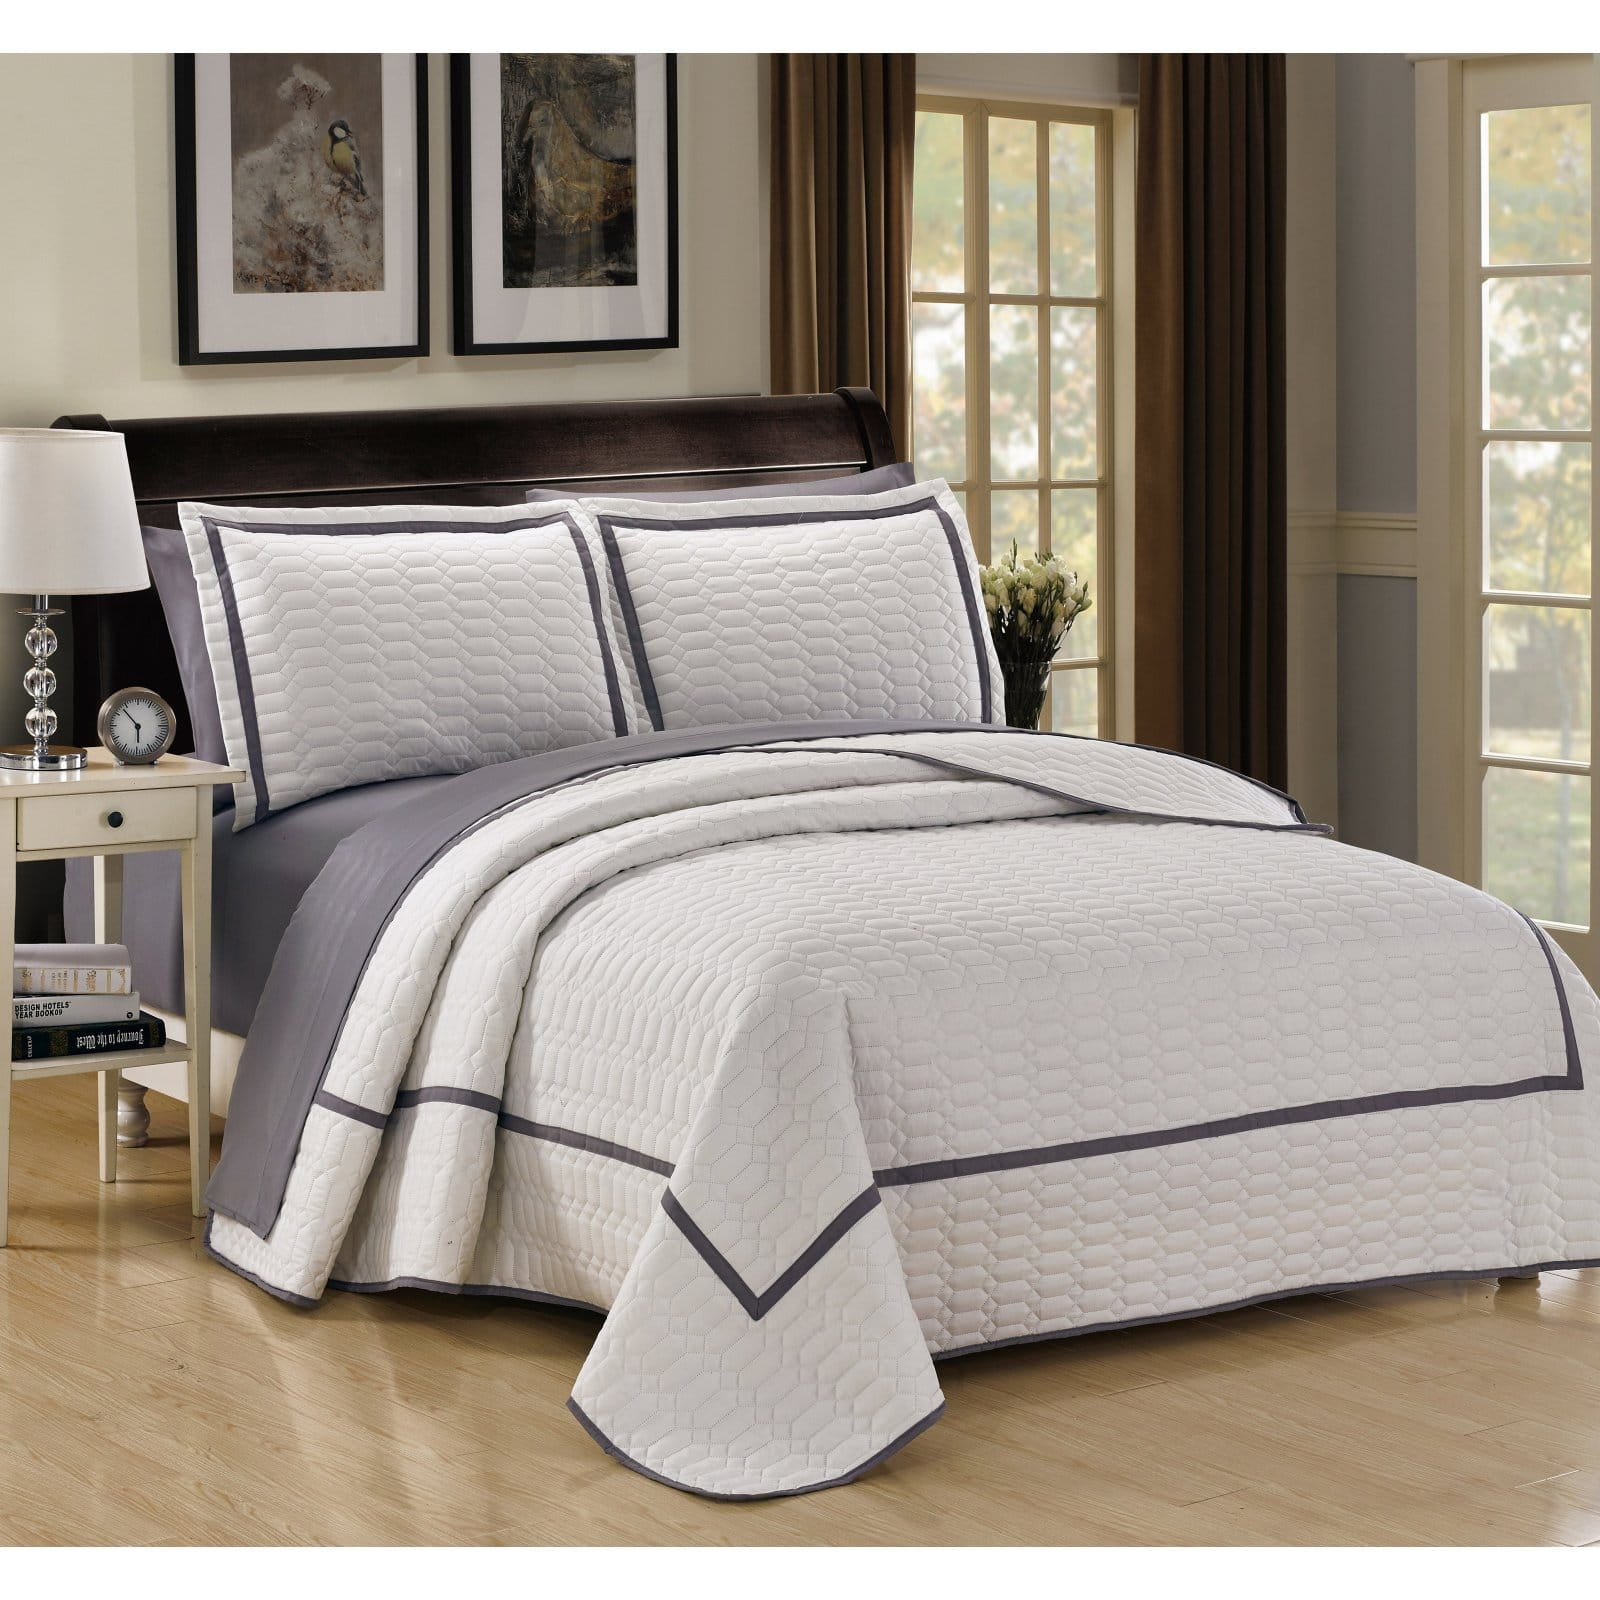 Details about   Elegant Black Grey Striped Border Comforter & Sheets King or Queen 10 pcs Set 